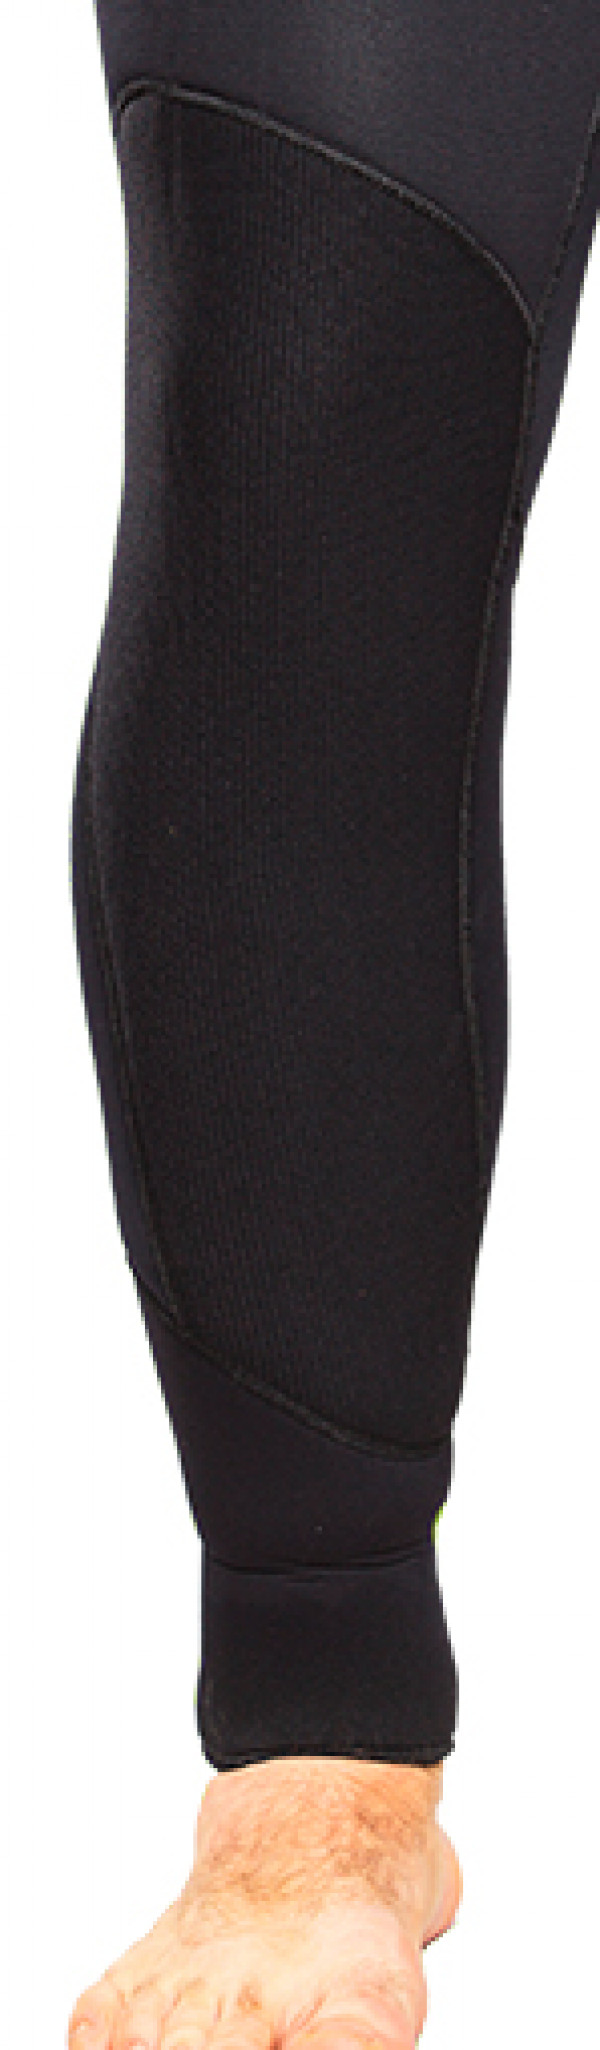 Материал «duratex» защищает колени и локти костюма от преждевременного истирания